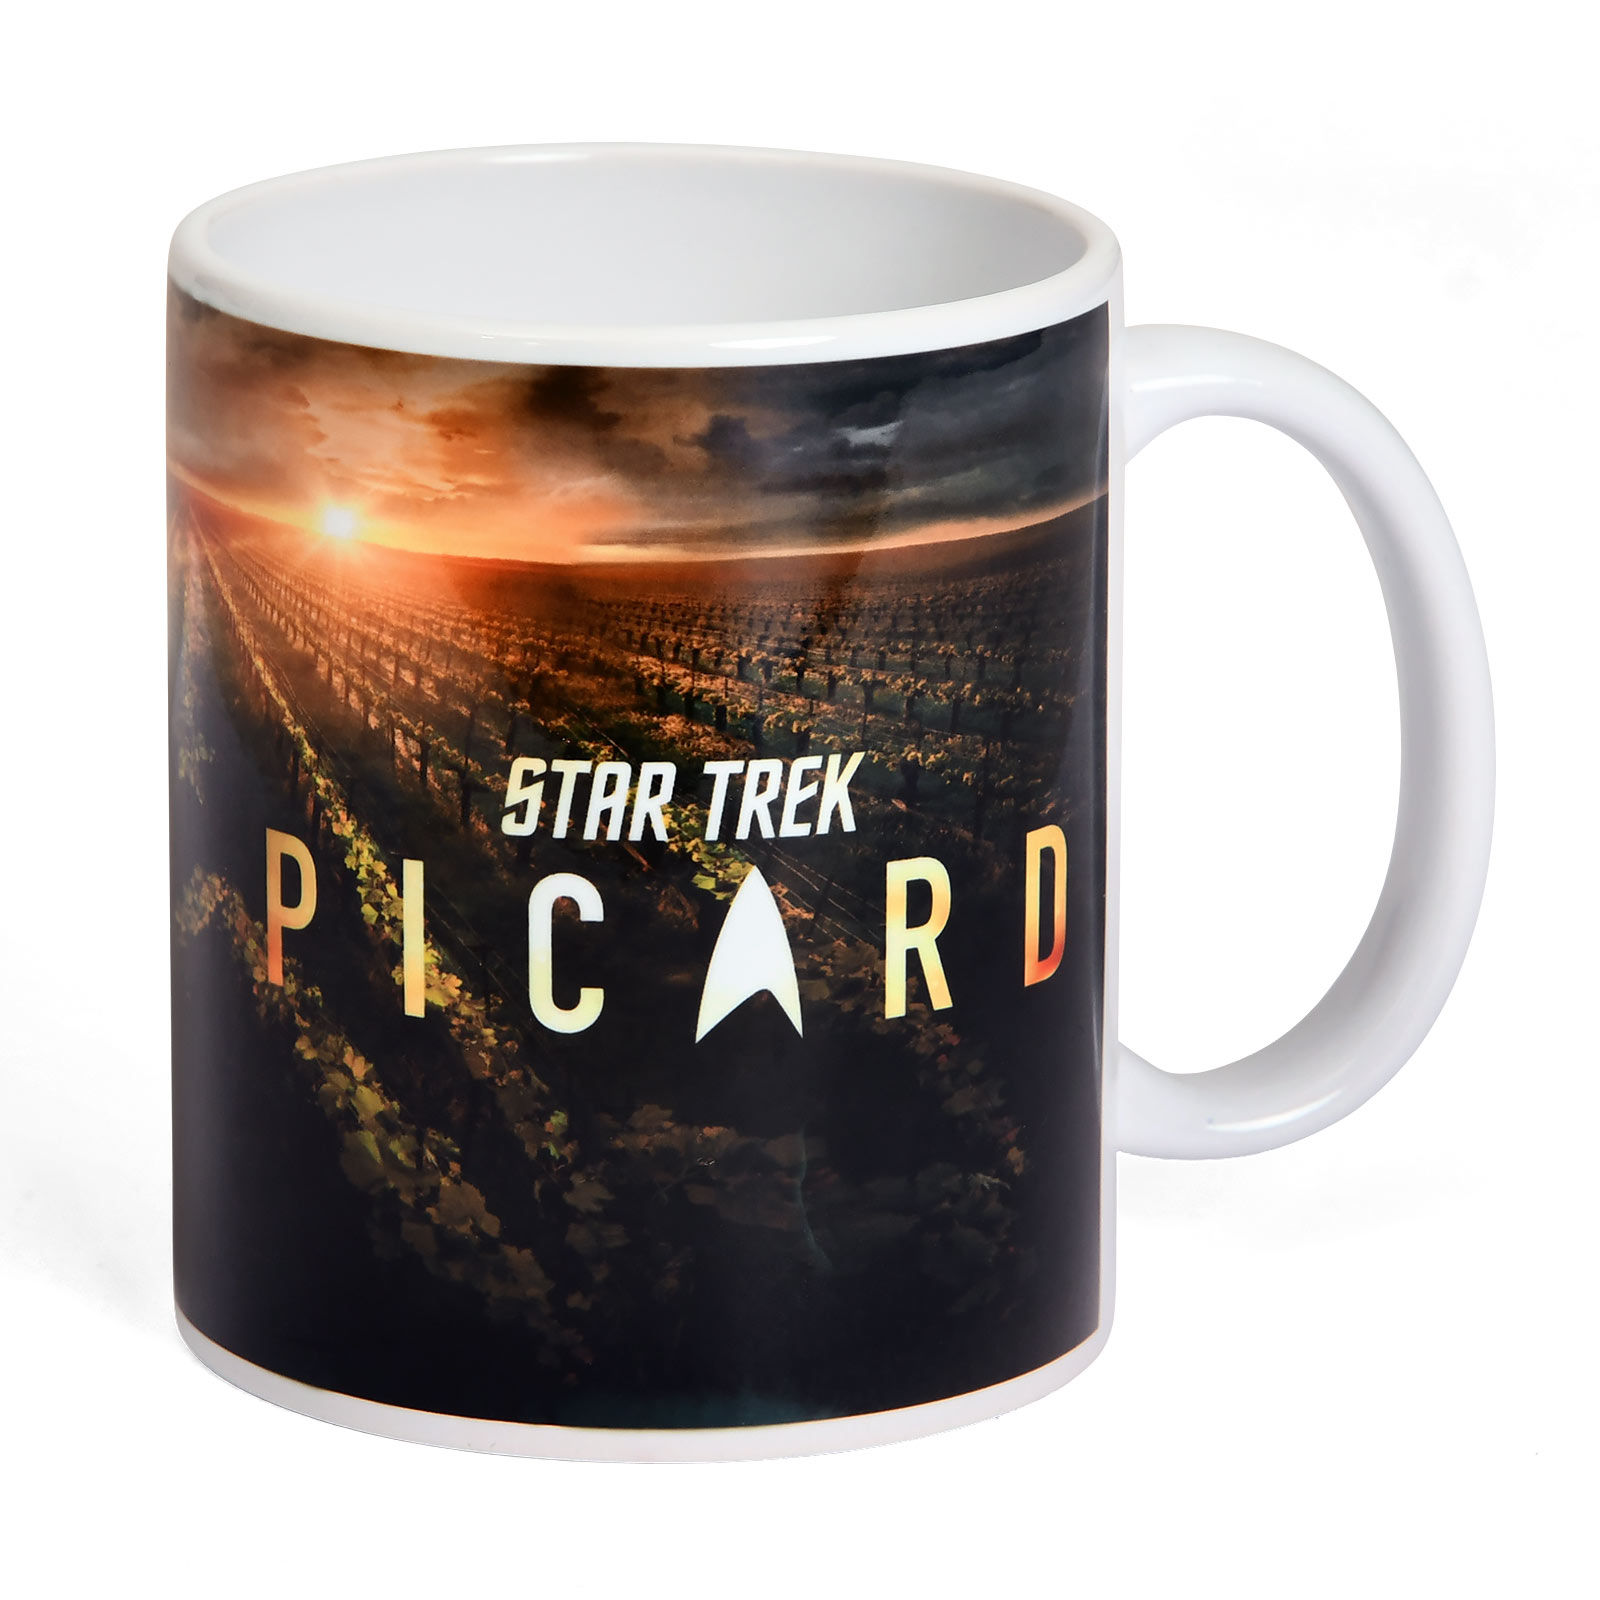 Star Trek - Picard Chateau Mug